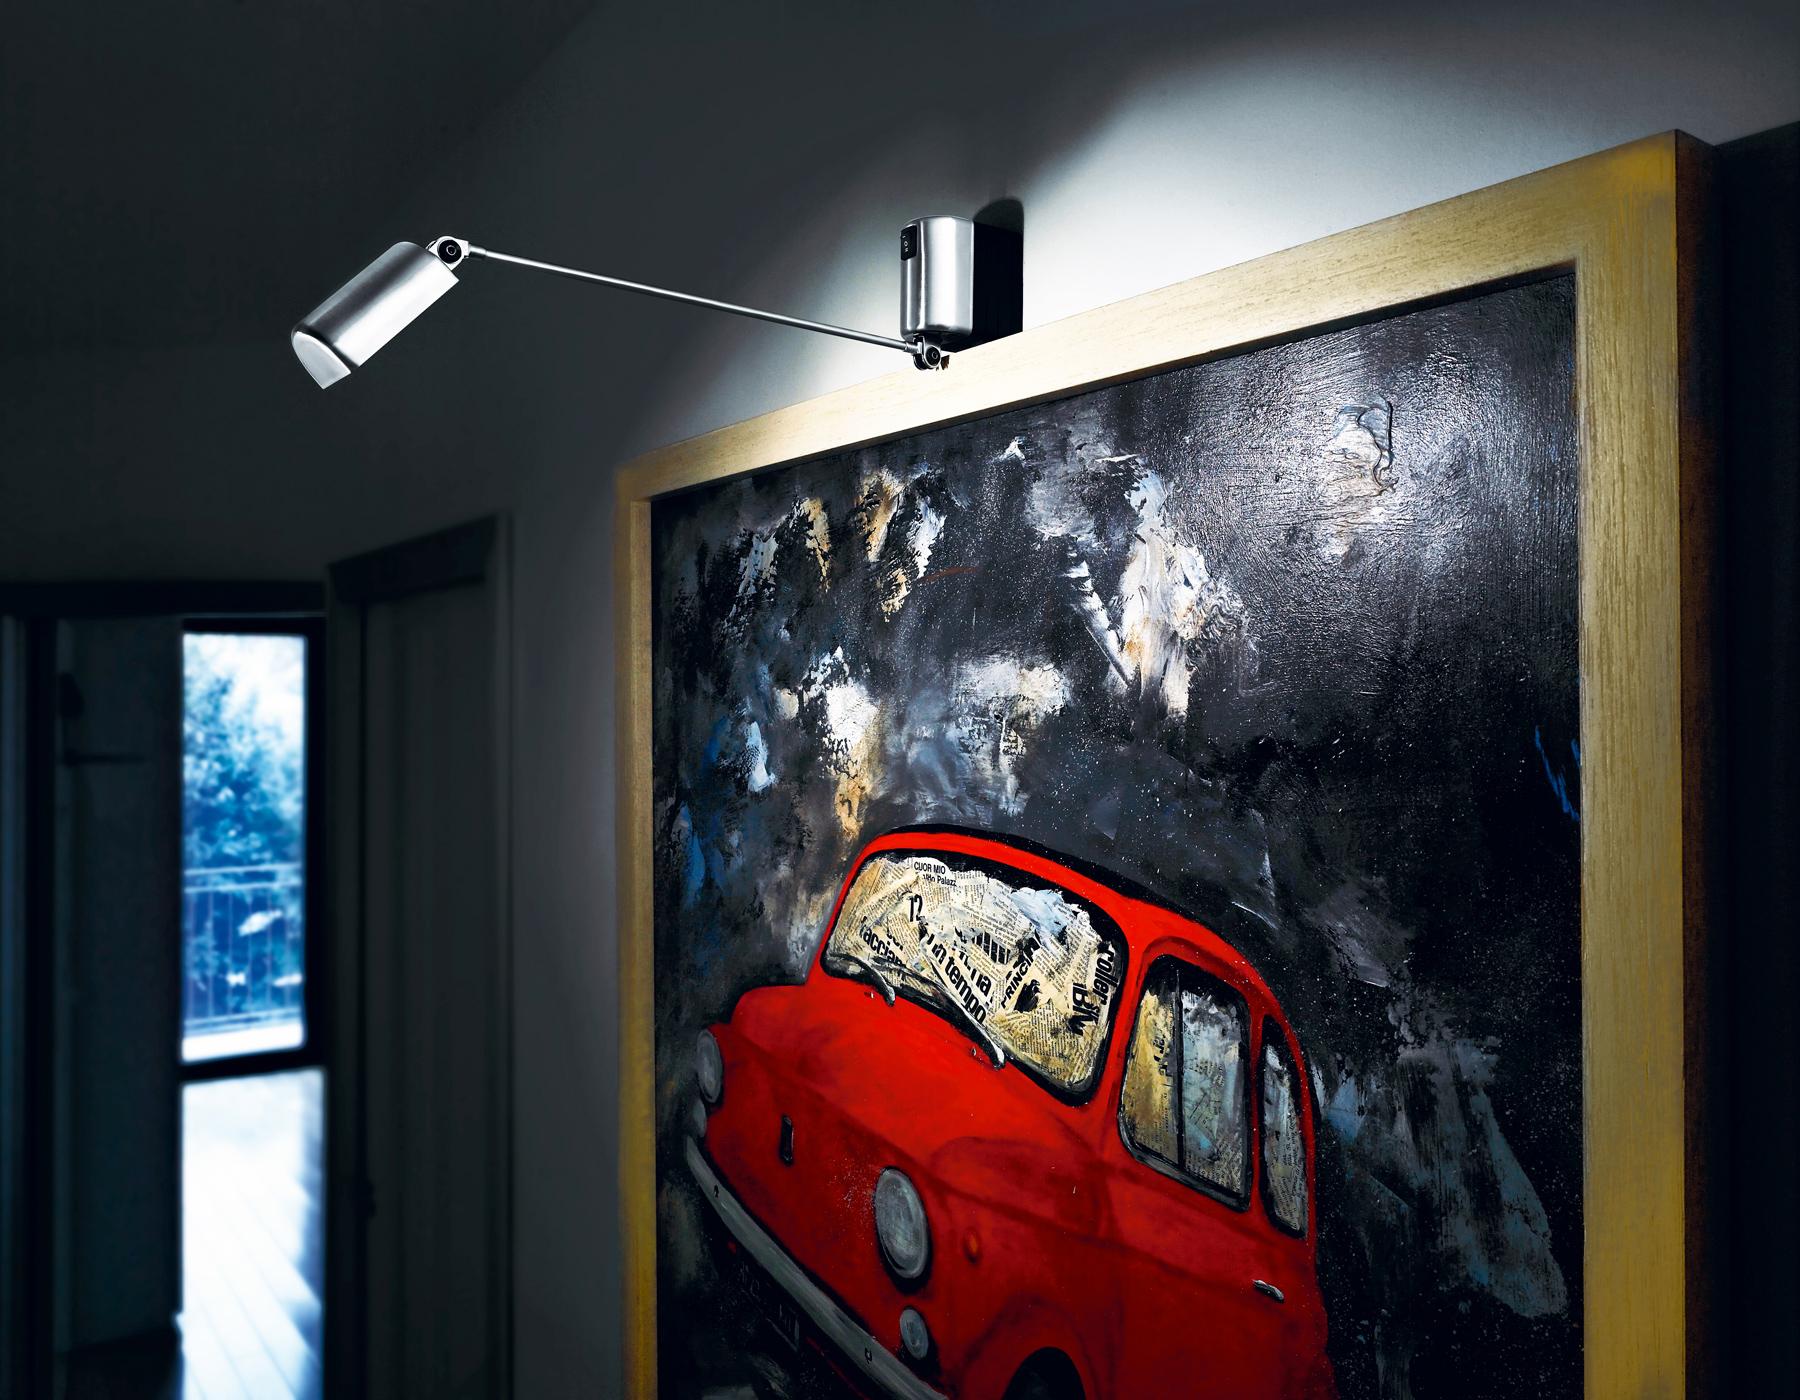 Lumina Daphine Parete LED-wandleuchte von Tommaso Cimini

Die Wandversion mit ihrer minimalistischen Ästhetik hat einen einzigen Arm, der um 180° horizontal und 90° vertikal gedreht werden kann, bis er ganz an der Wand anliegt. Die Daphine hat den